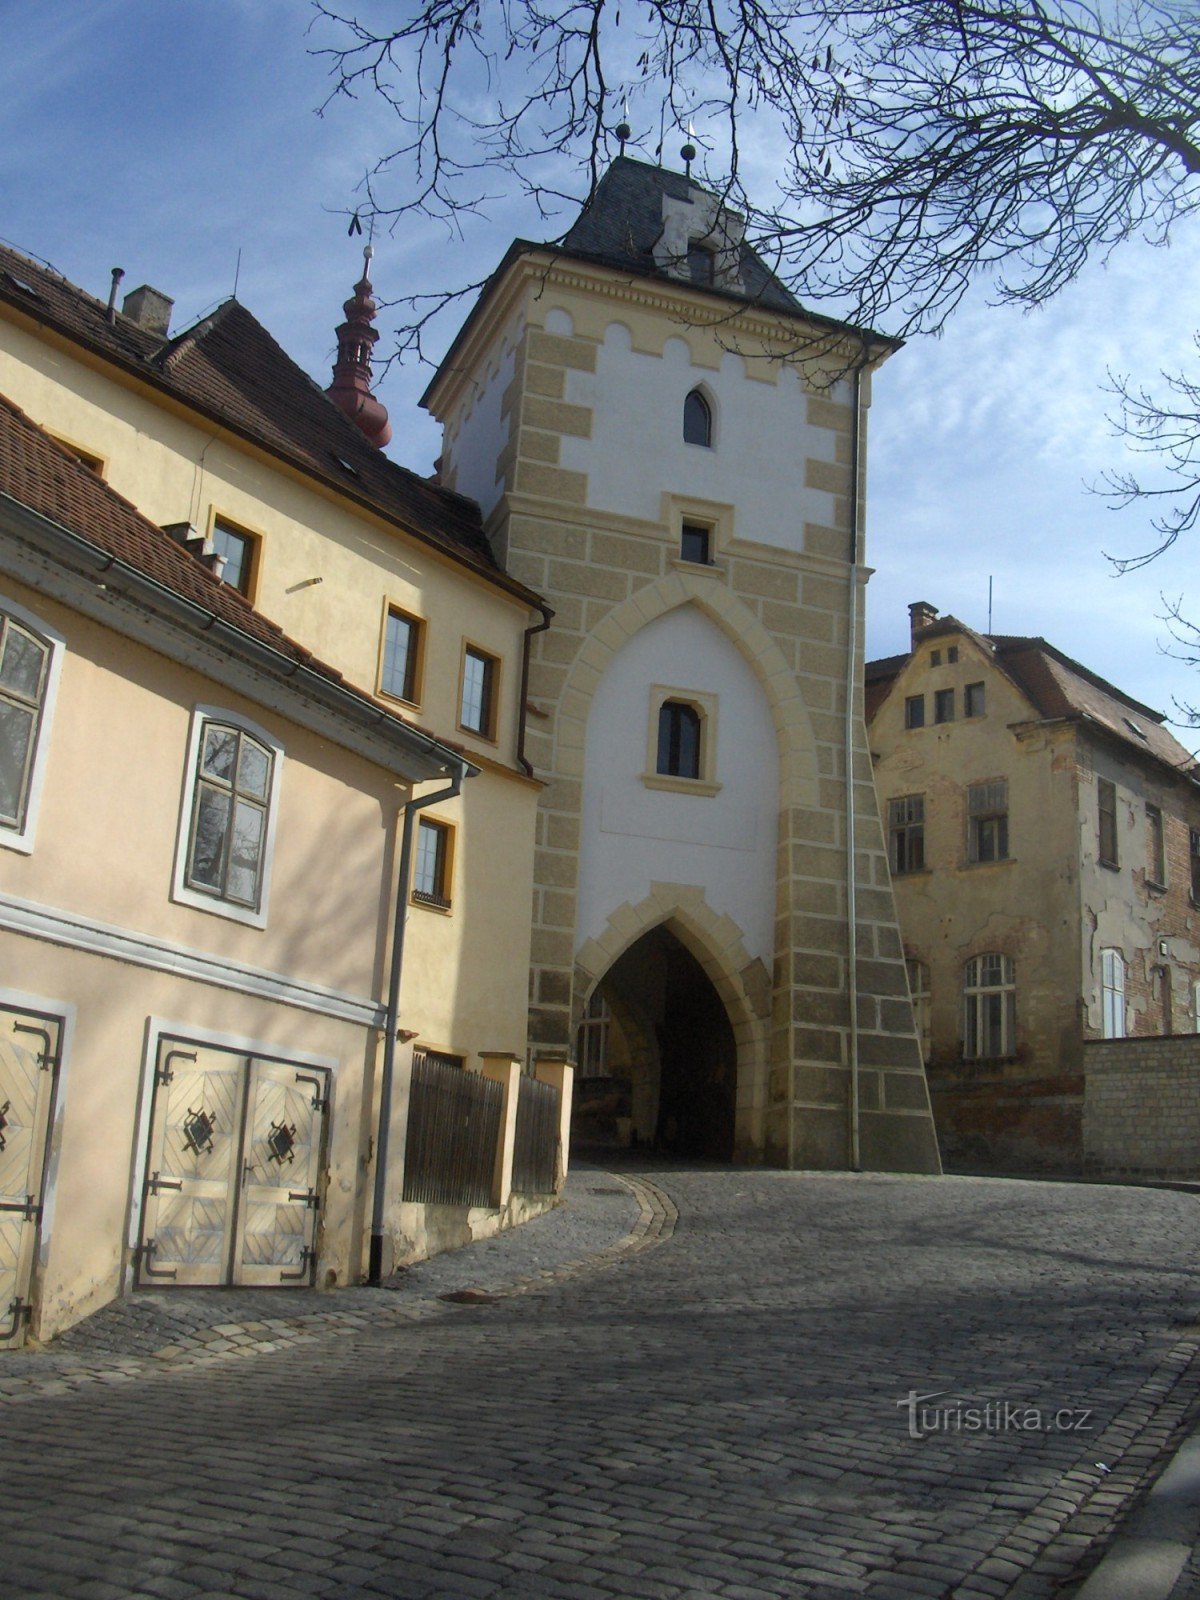 Svećenička vrata